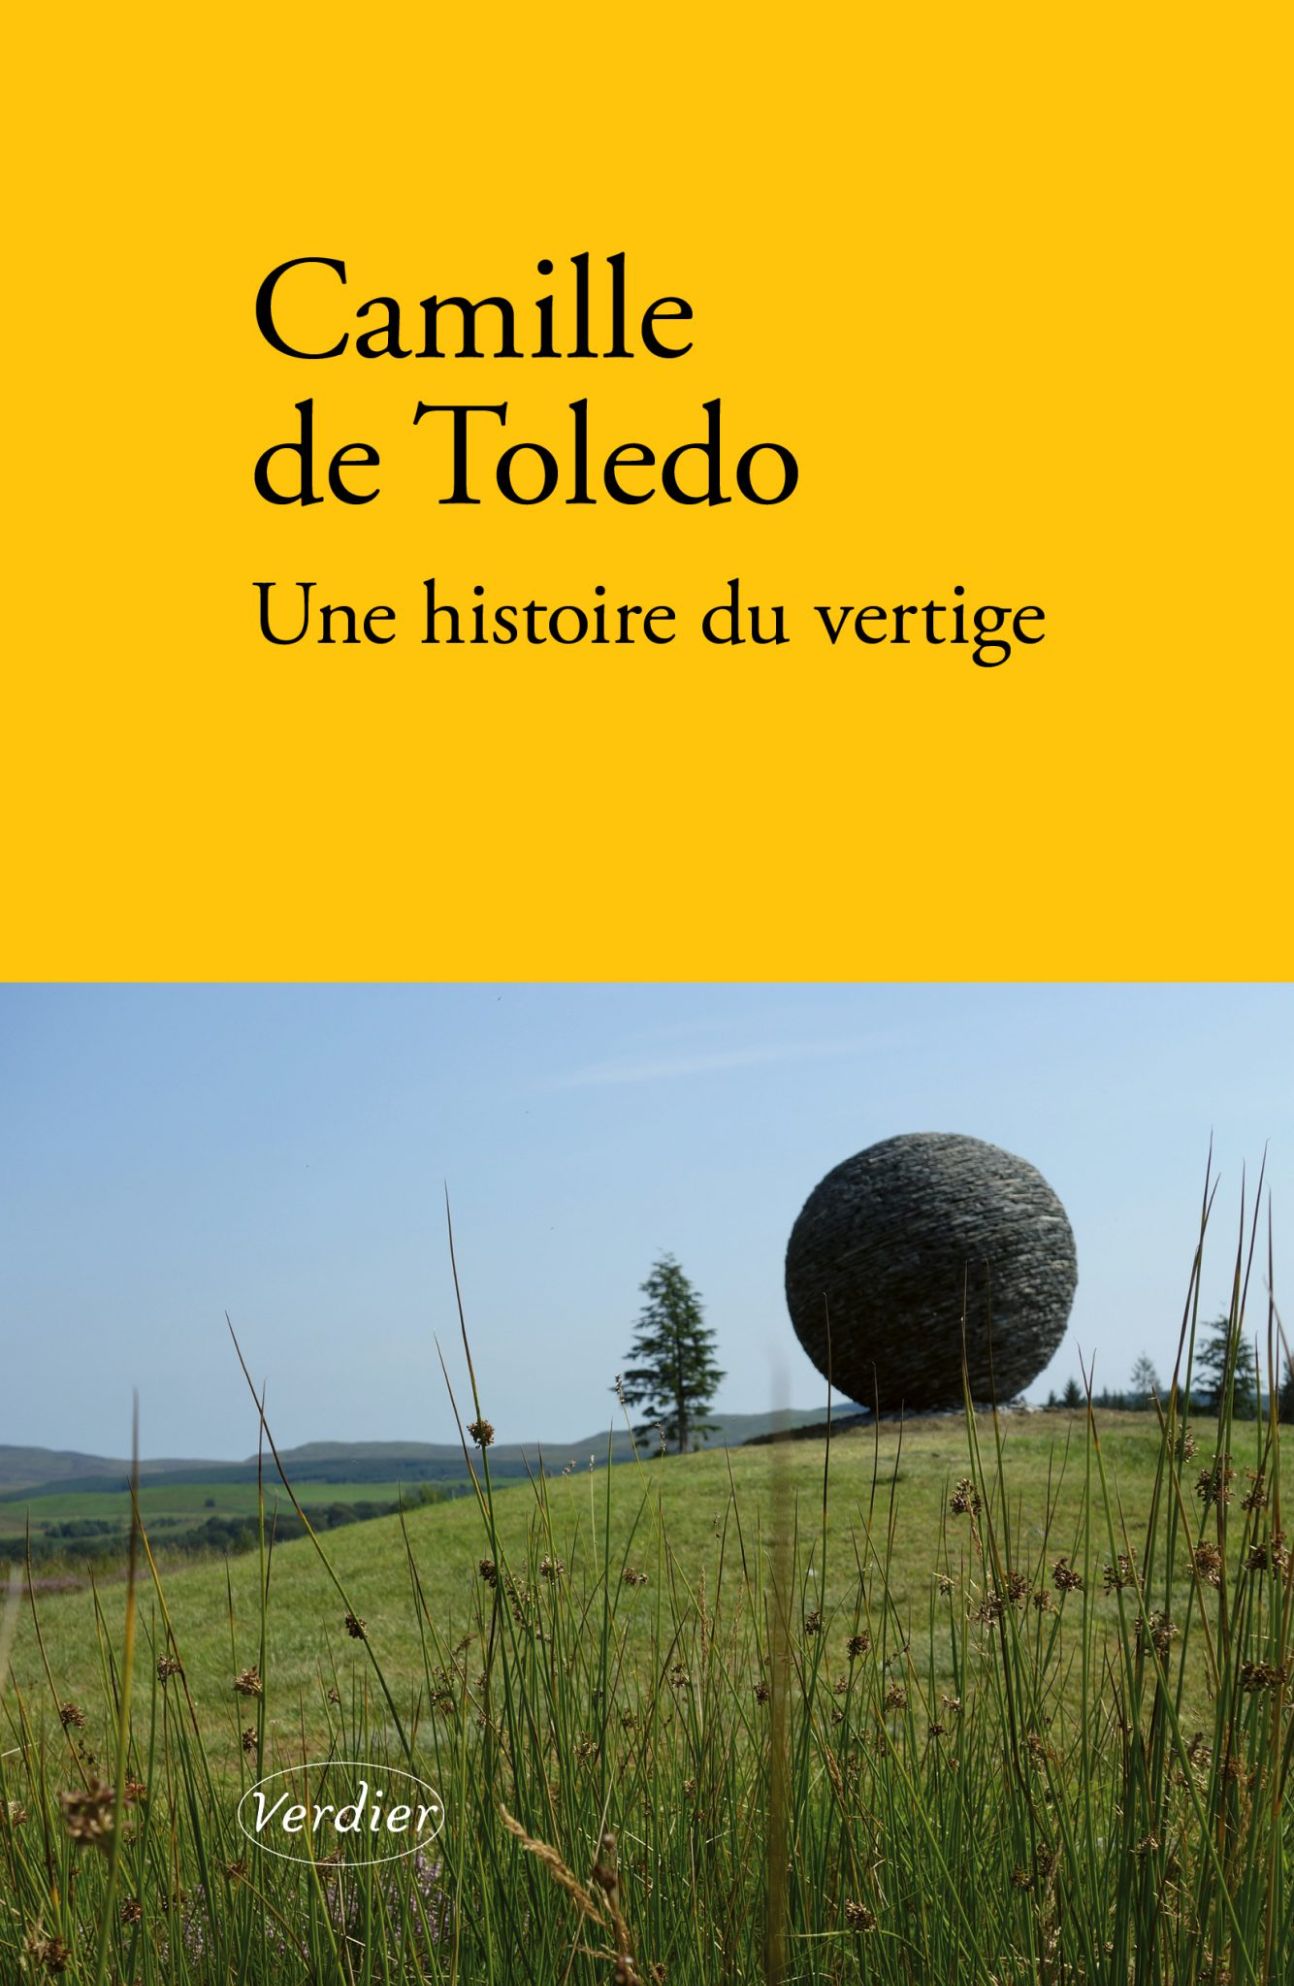 Camille De Toledo, Une histoire du vertige